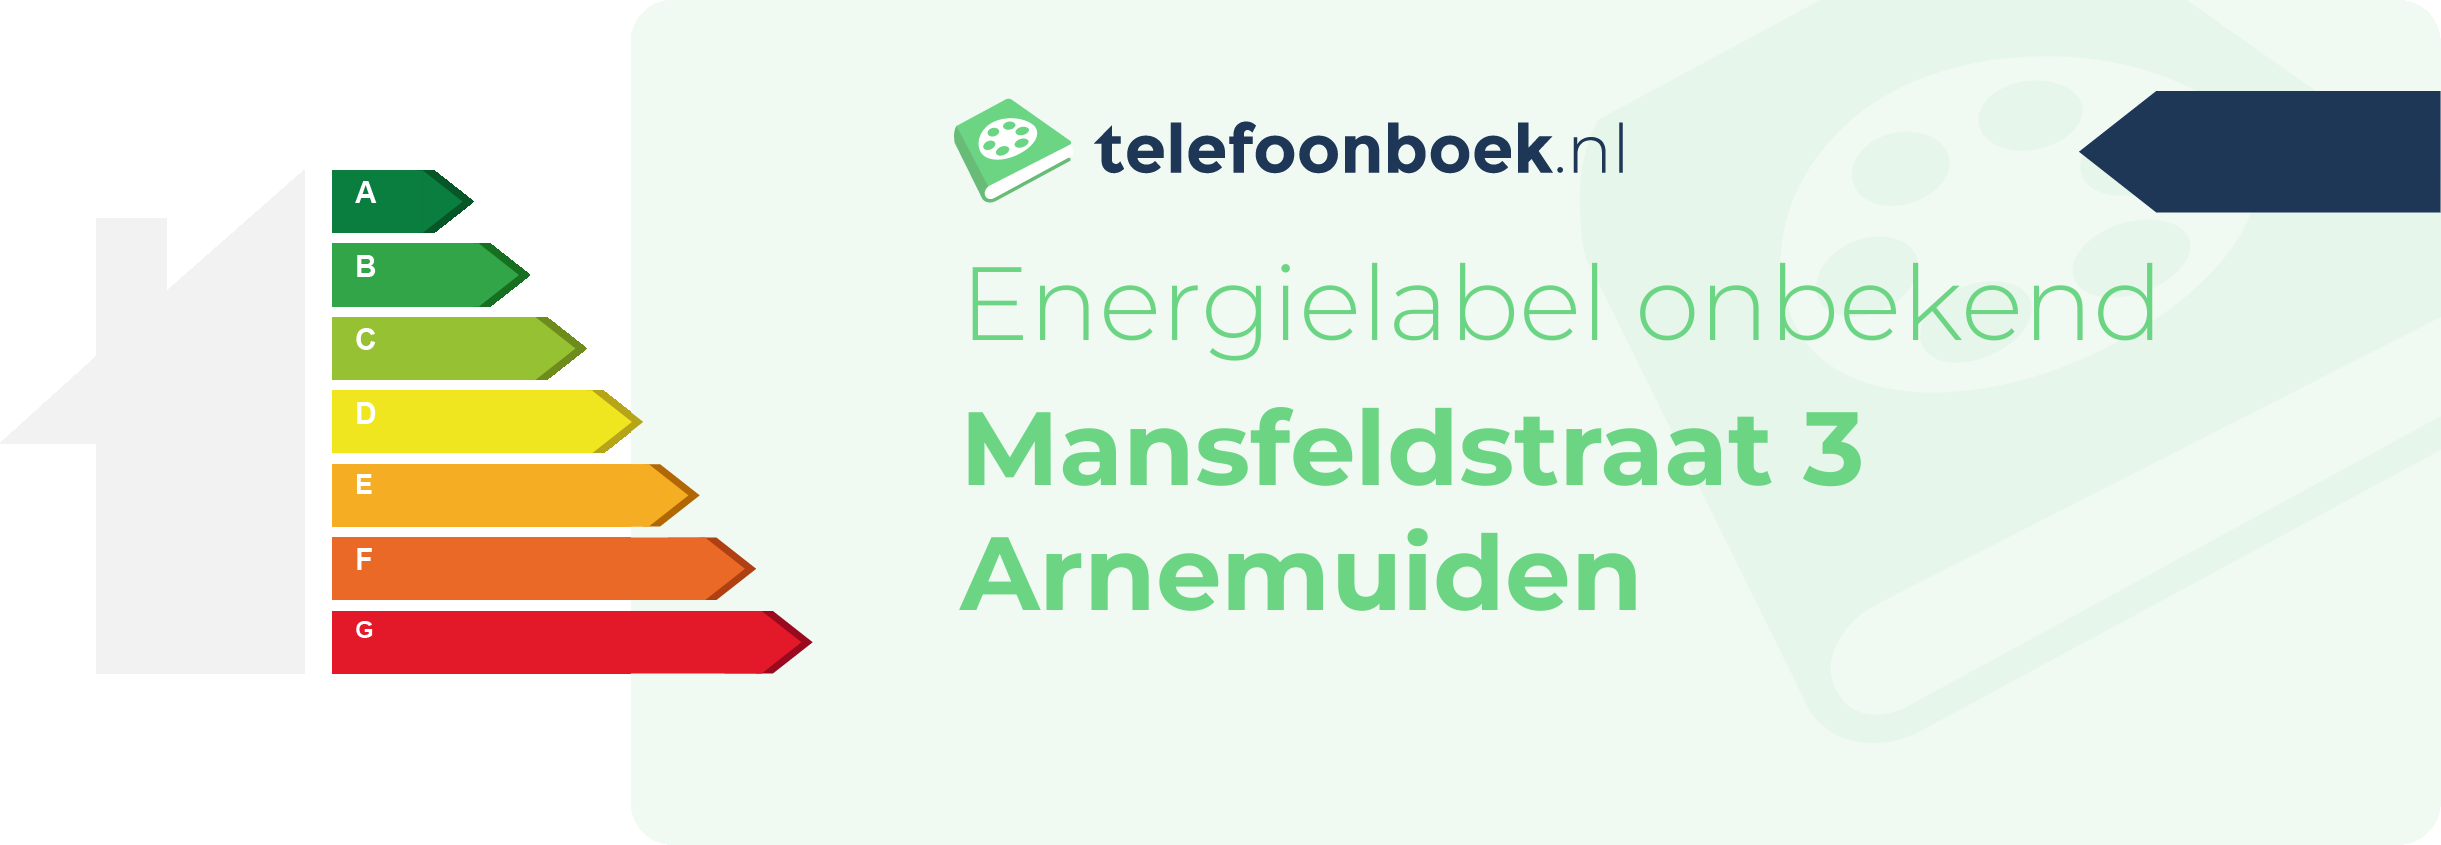 Energielabel Mansfeldstraat 3 Arnemuiden